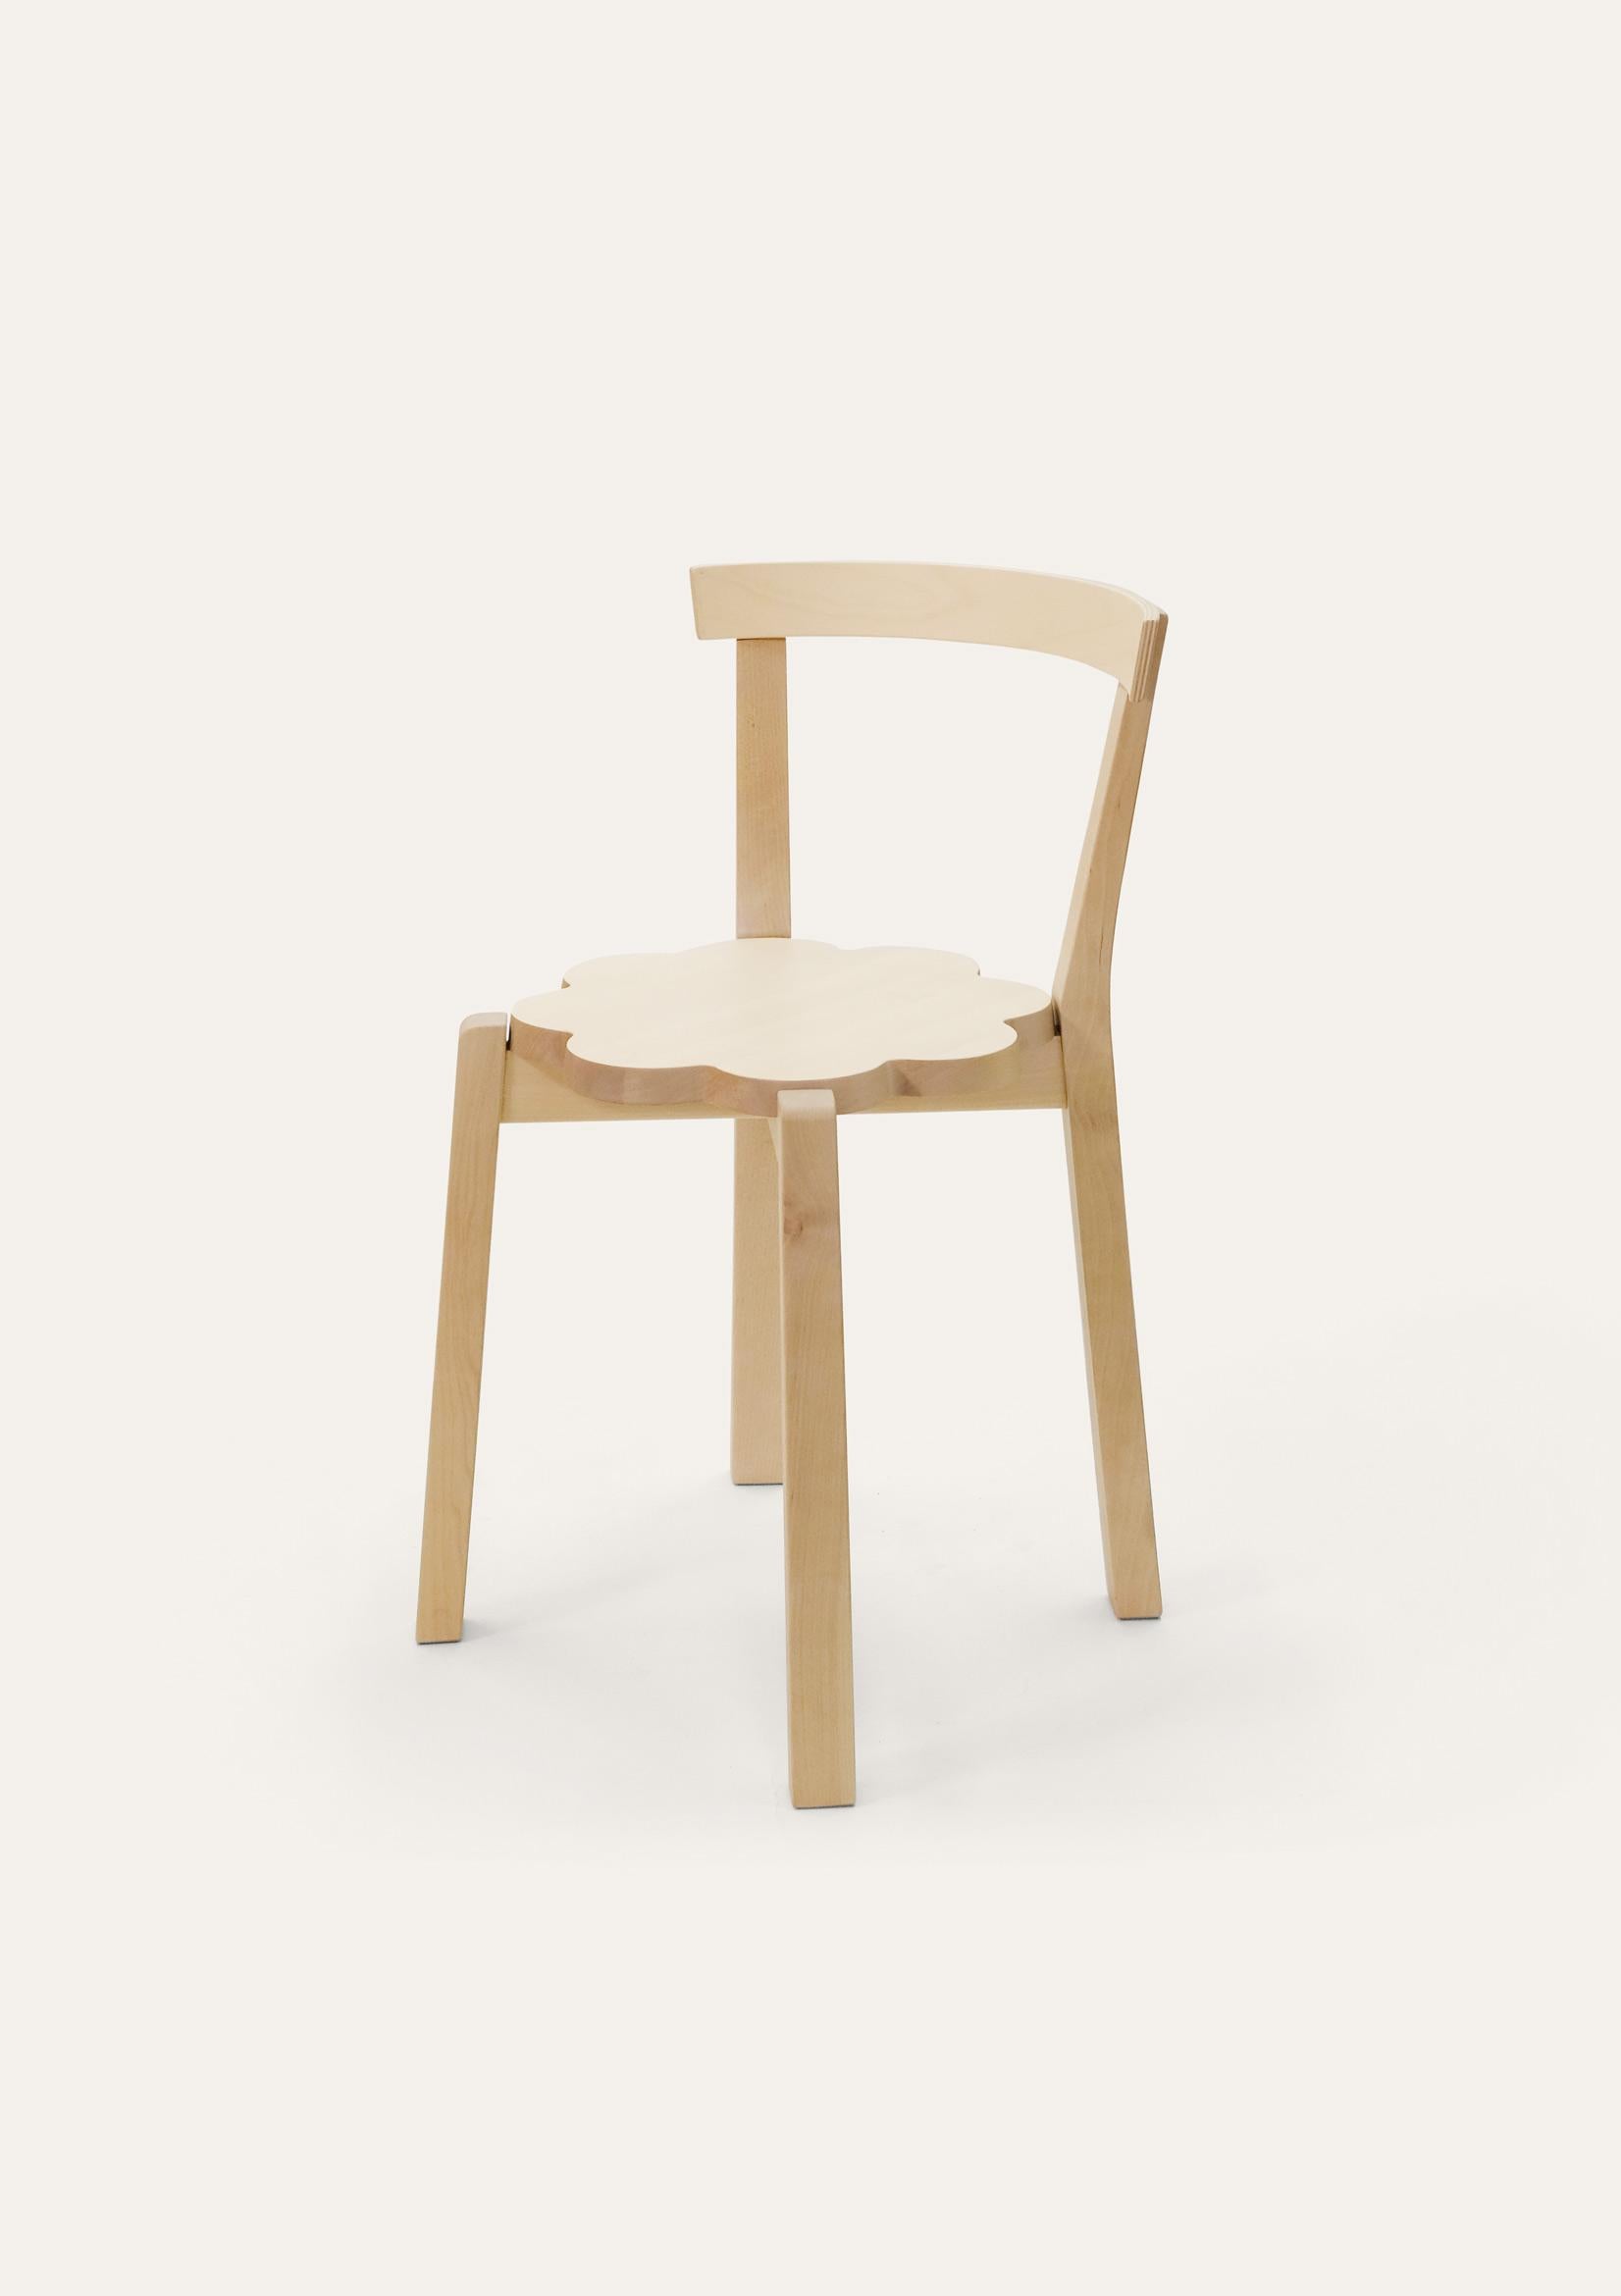 Chaise Natural Blossom par Storängen Design
Dimensions : D 46 x L 41 x H 72 x SH 45cm
MATERIAL : bois de bouleau.
Disponible dans d'autres couleurs et tailles.

Une petite chaise empilable et soignée, qui convient bien aux tables rondes des cafés et